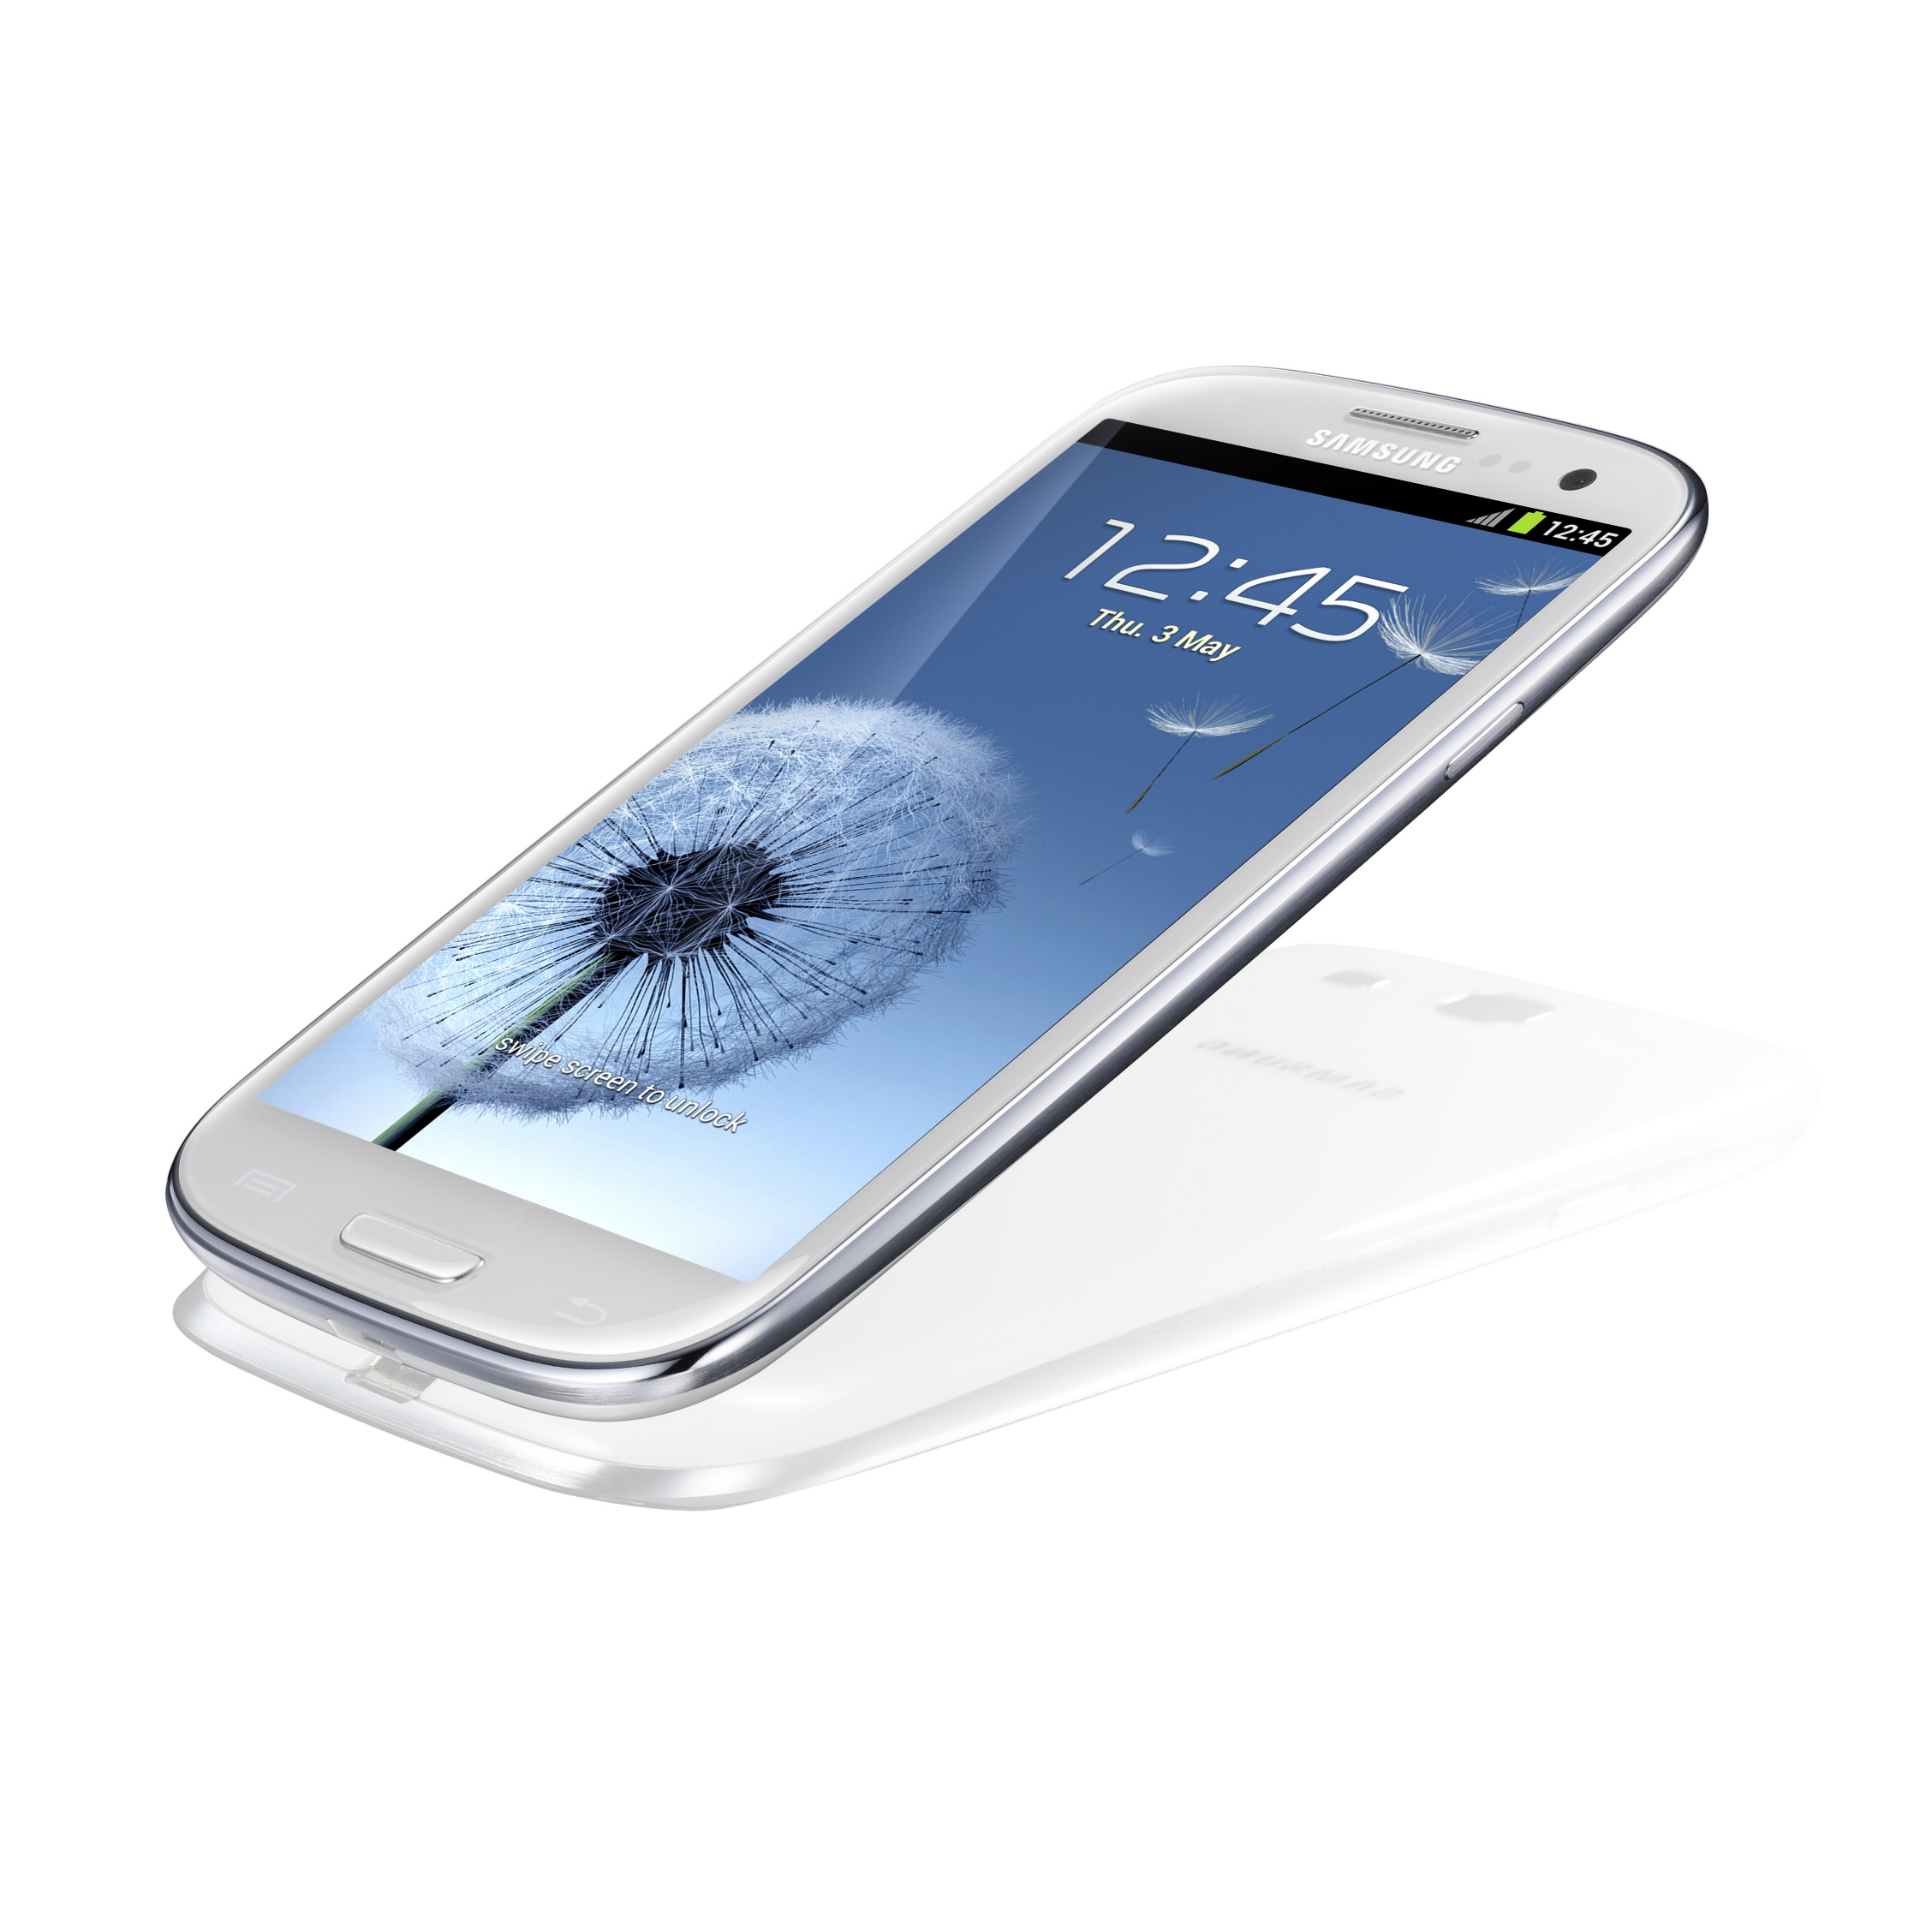 Immagine pubblicata in relazione al seguente contenuto: Samsung Electronics annuncia lo smartphone GALAXY S III | Nome immagine: news17157_3.jpg